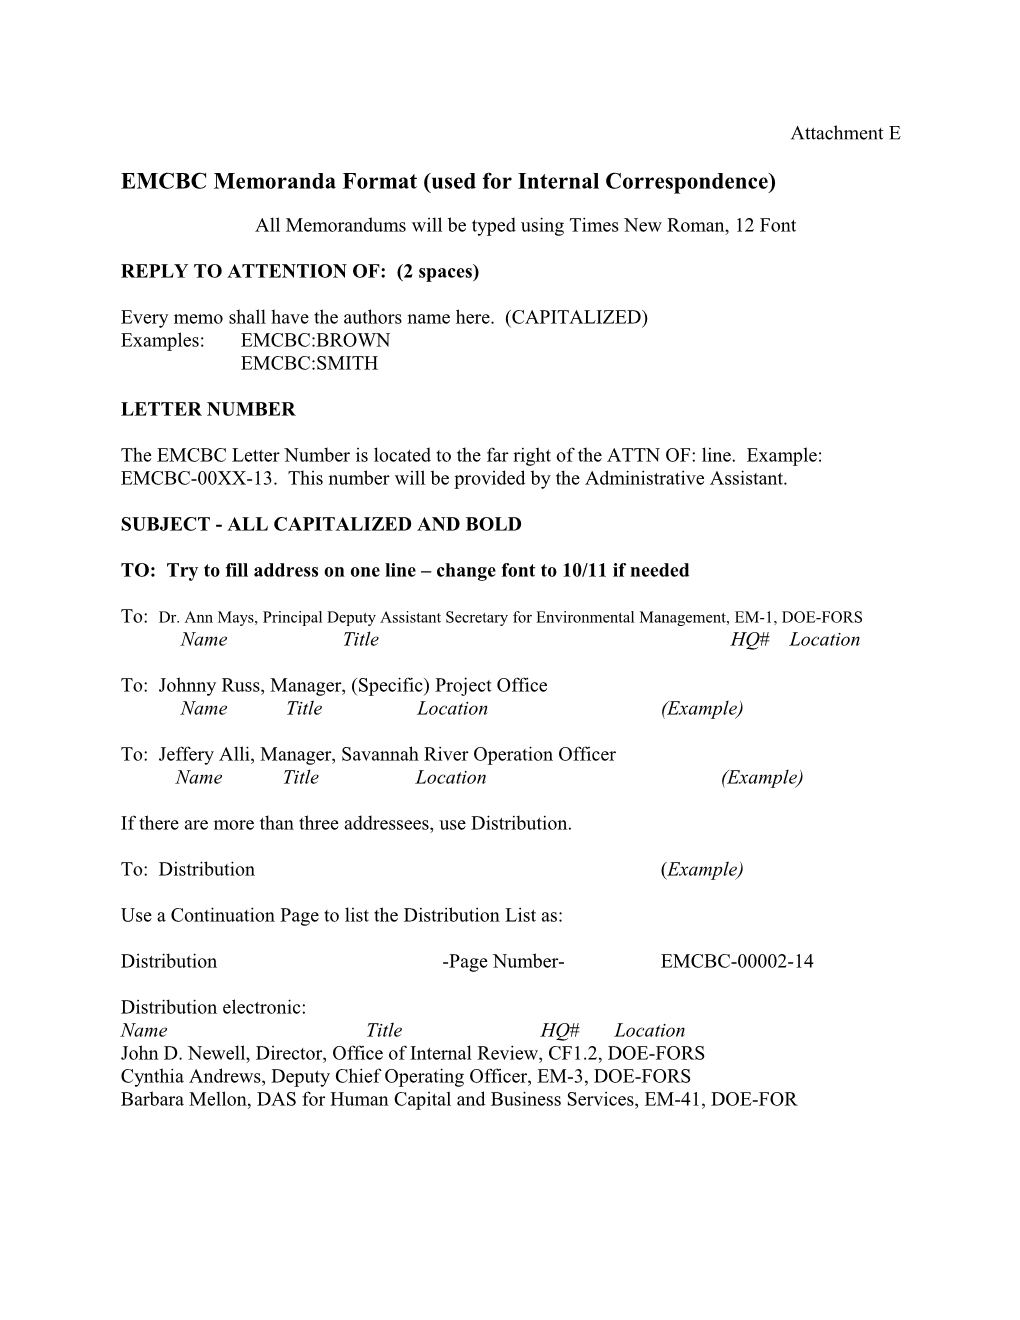 EMCBC Memoranda Format (Used for Internal Correspondence)